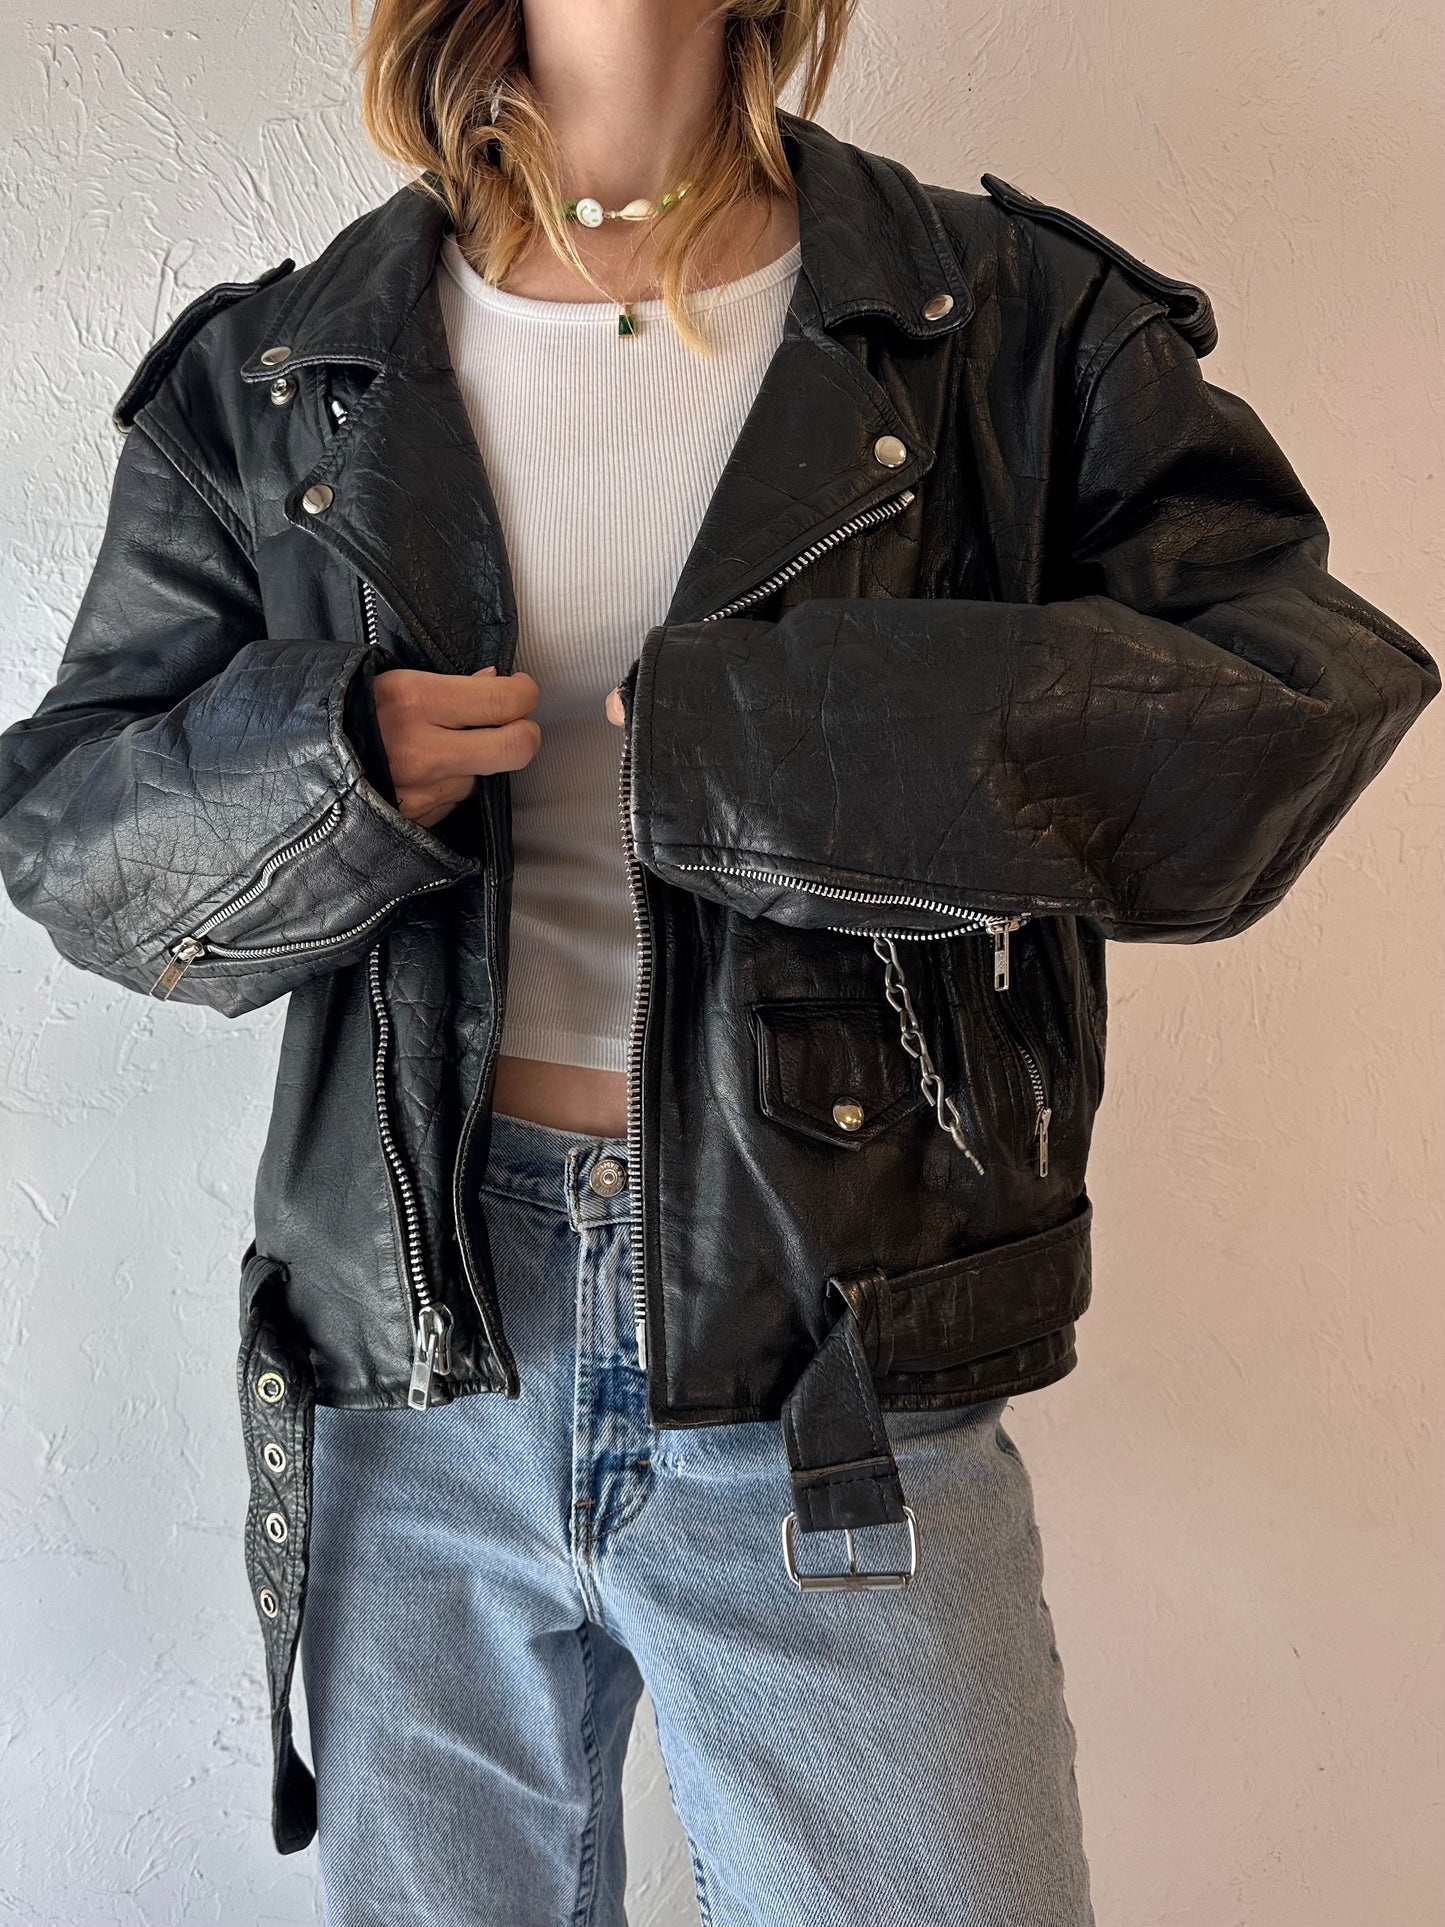 90s 'Genuine Leather' Heavy Duty Leather Moto Jacket / Large